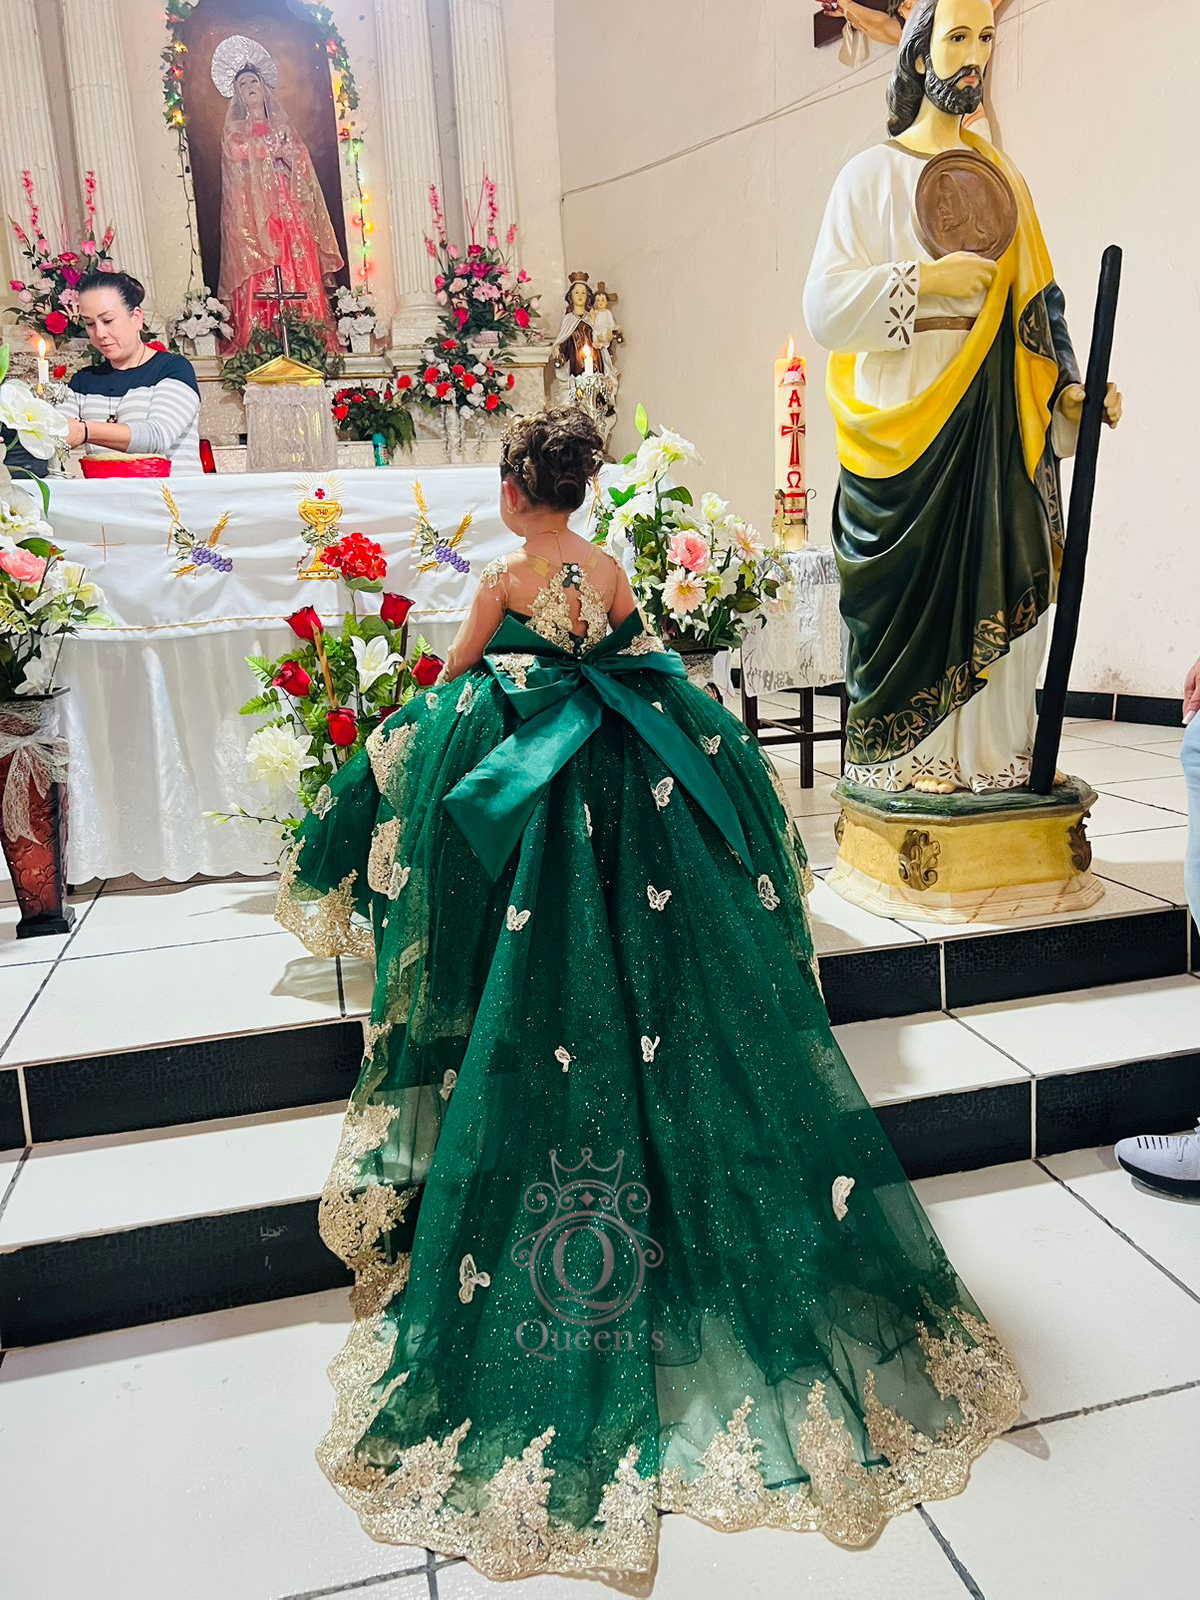 Maria Fernanda with Butterflies Package (Dress, Petticoat, Bouquet, Crown)